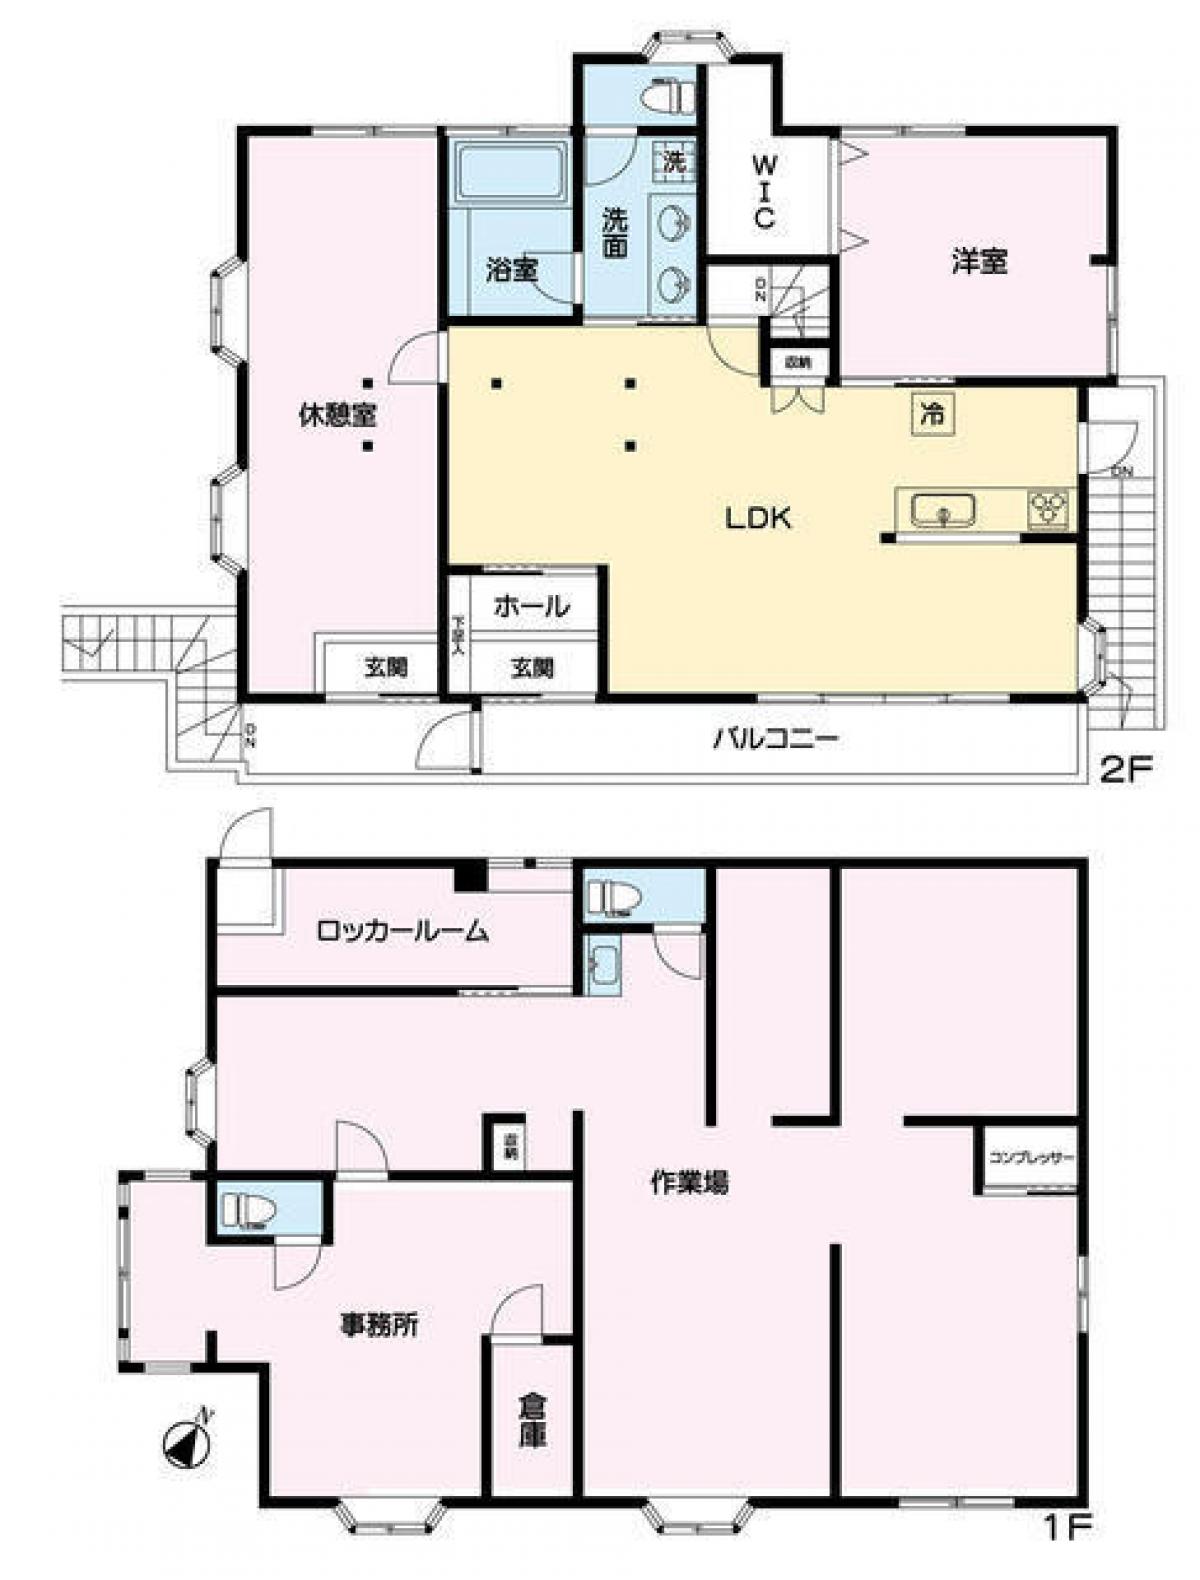 Picture of Home For Sale in Kawasaki Shi Tama Ku, Kanagawa, Japan